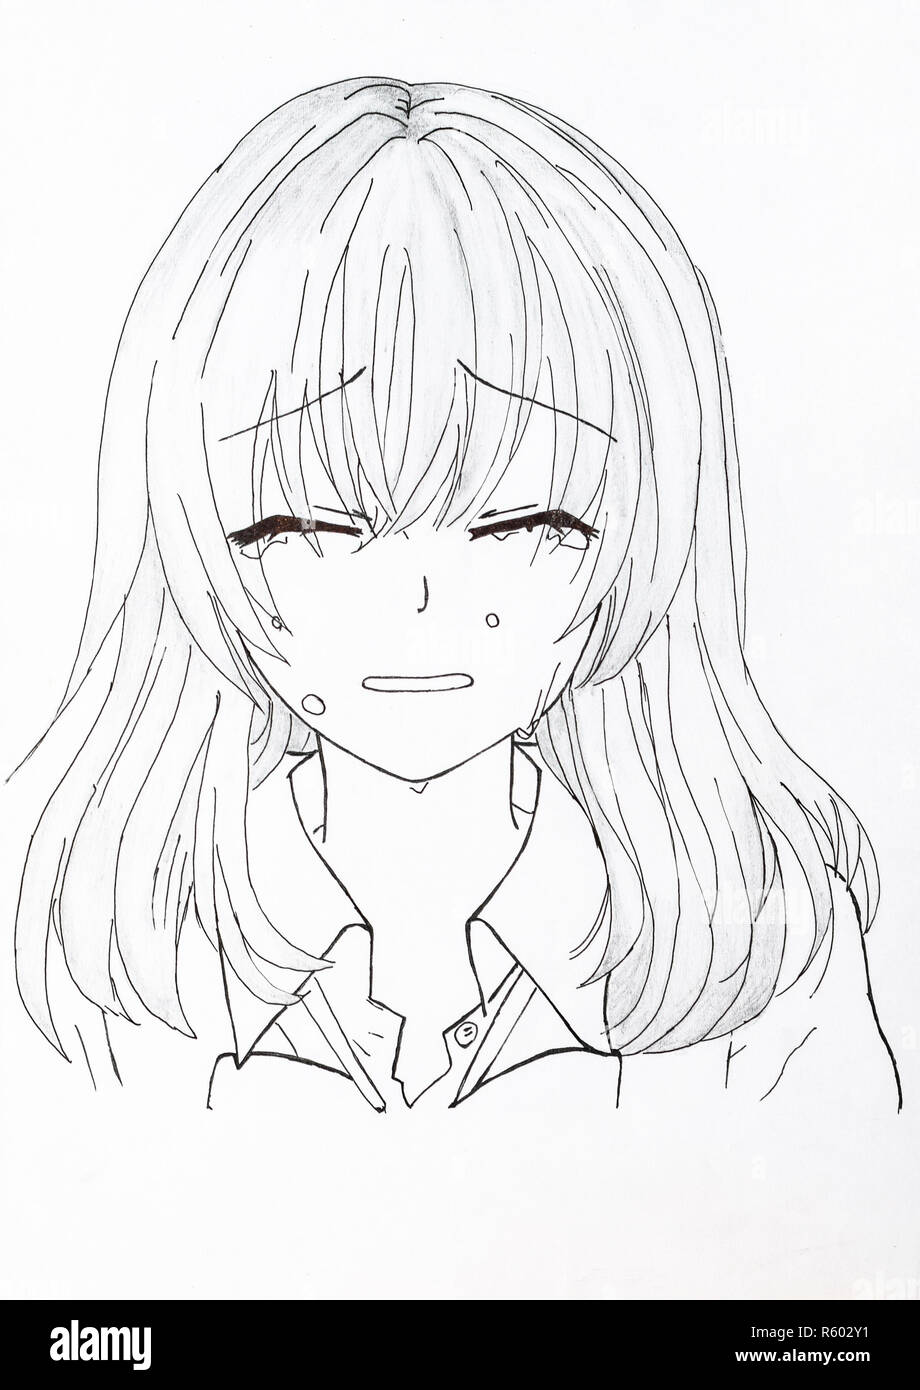 Dibujo en el estilo del anime. Imagen de una chica en la imagen Fotografía  de stock - Alamy